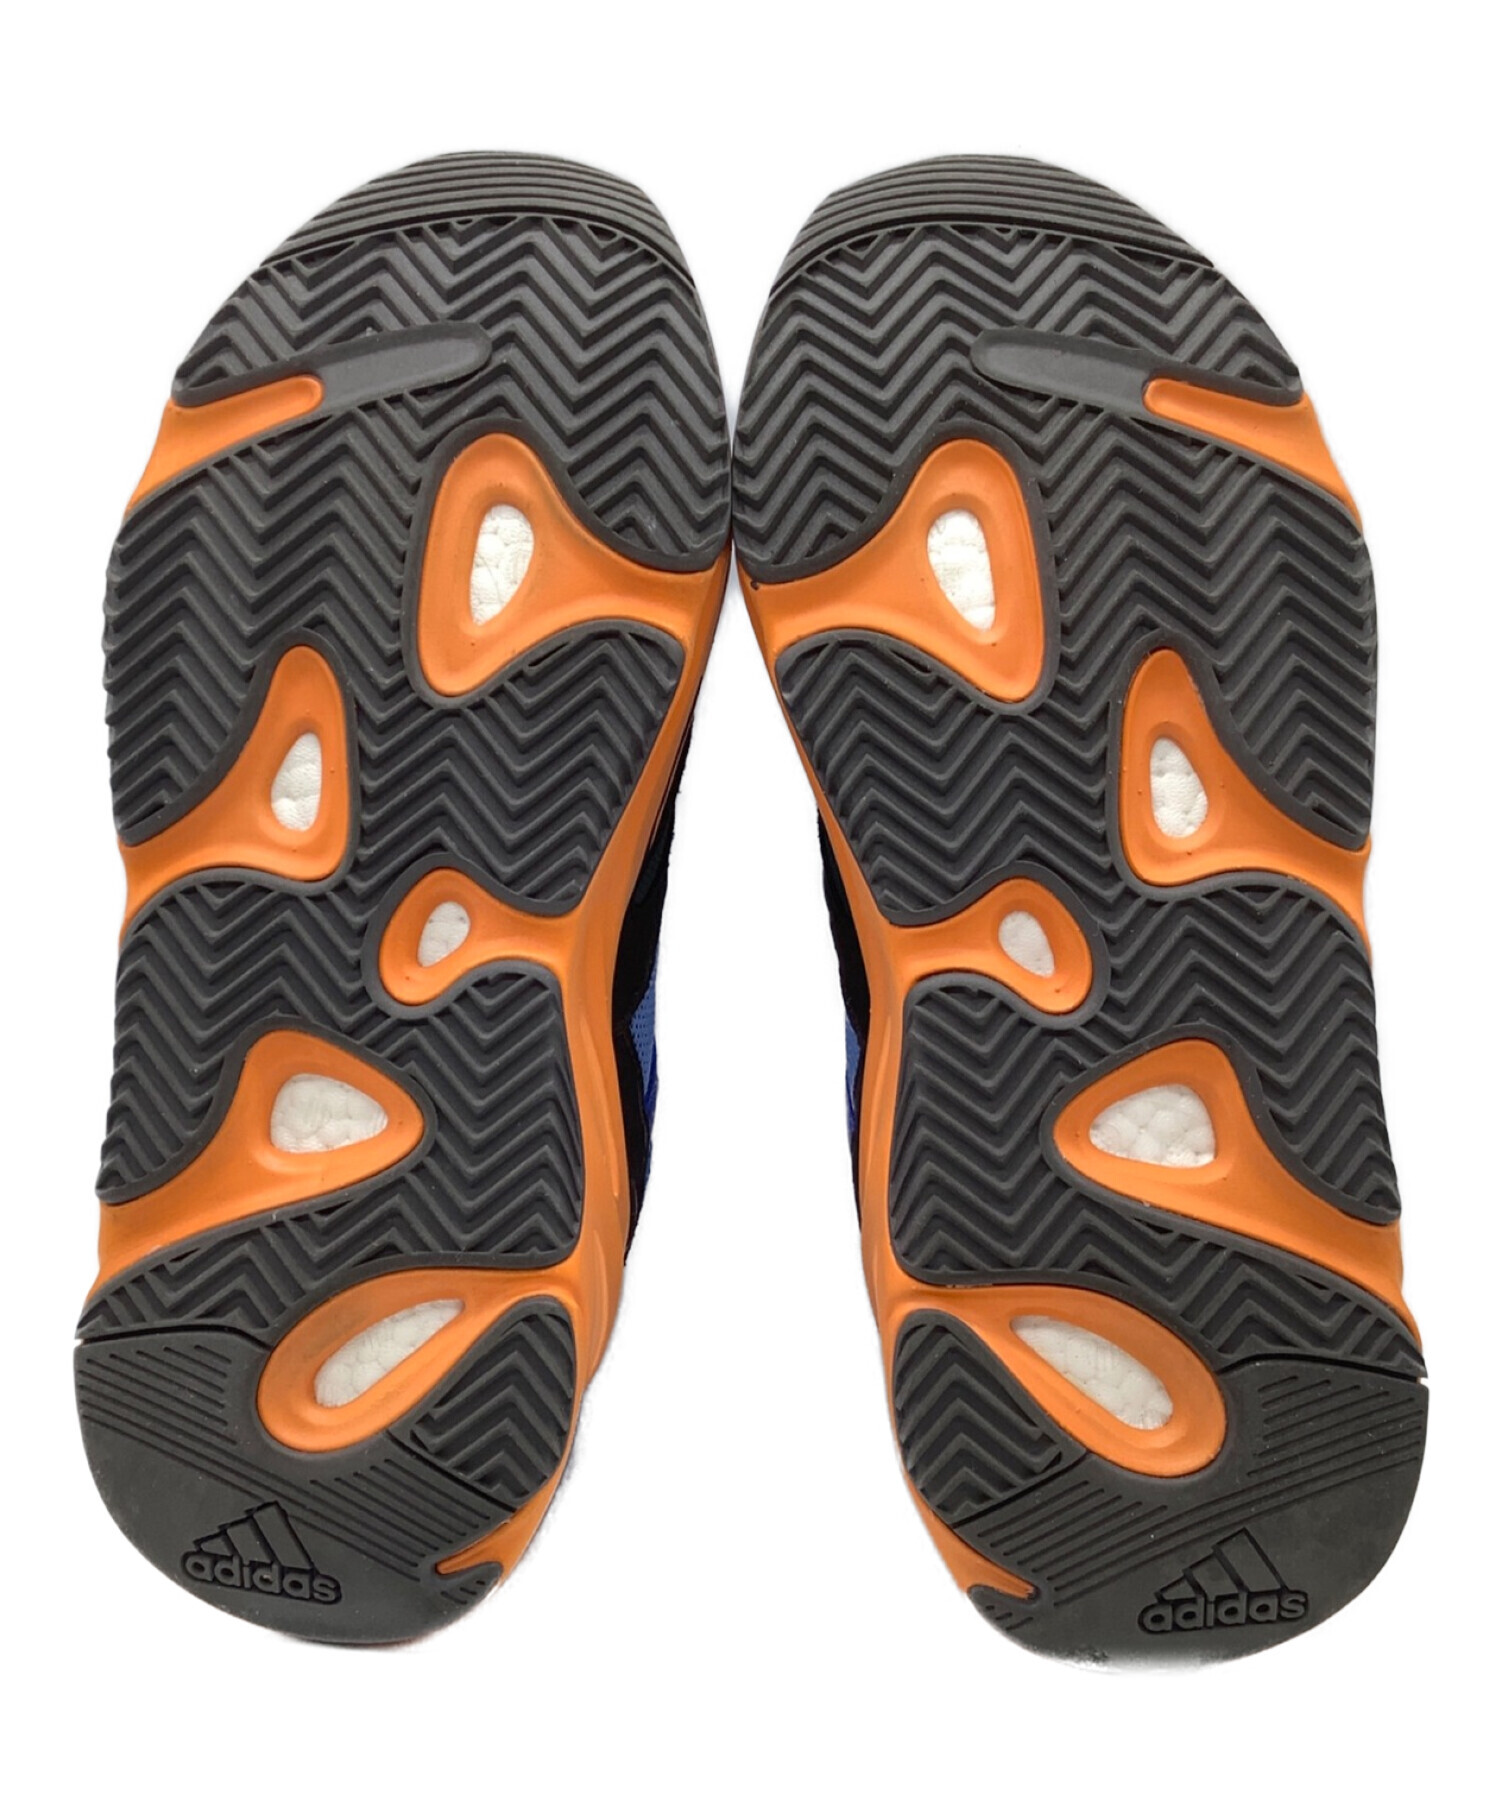 adidas (アディダス) YEEZY BOOST 700 ブルー×オレンジ サイズ:27.5